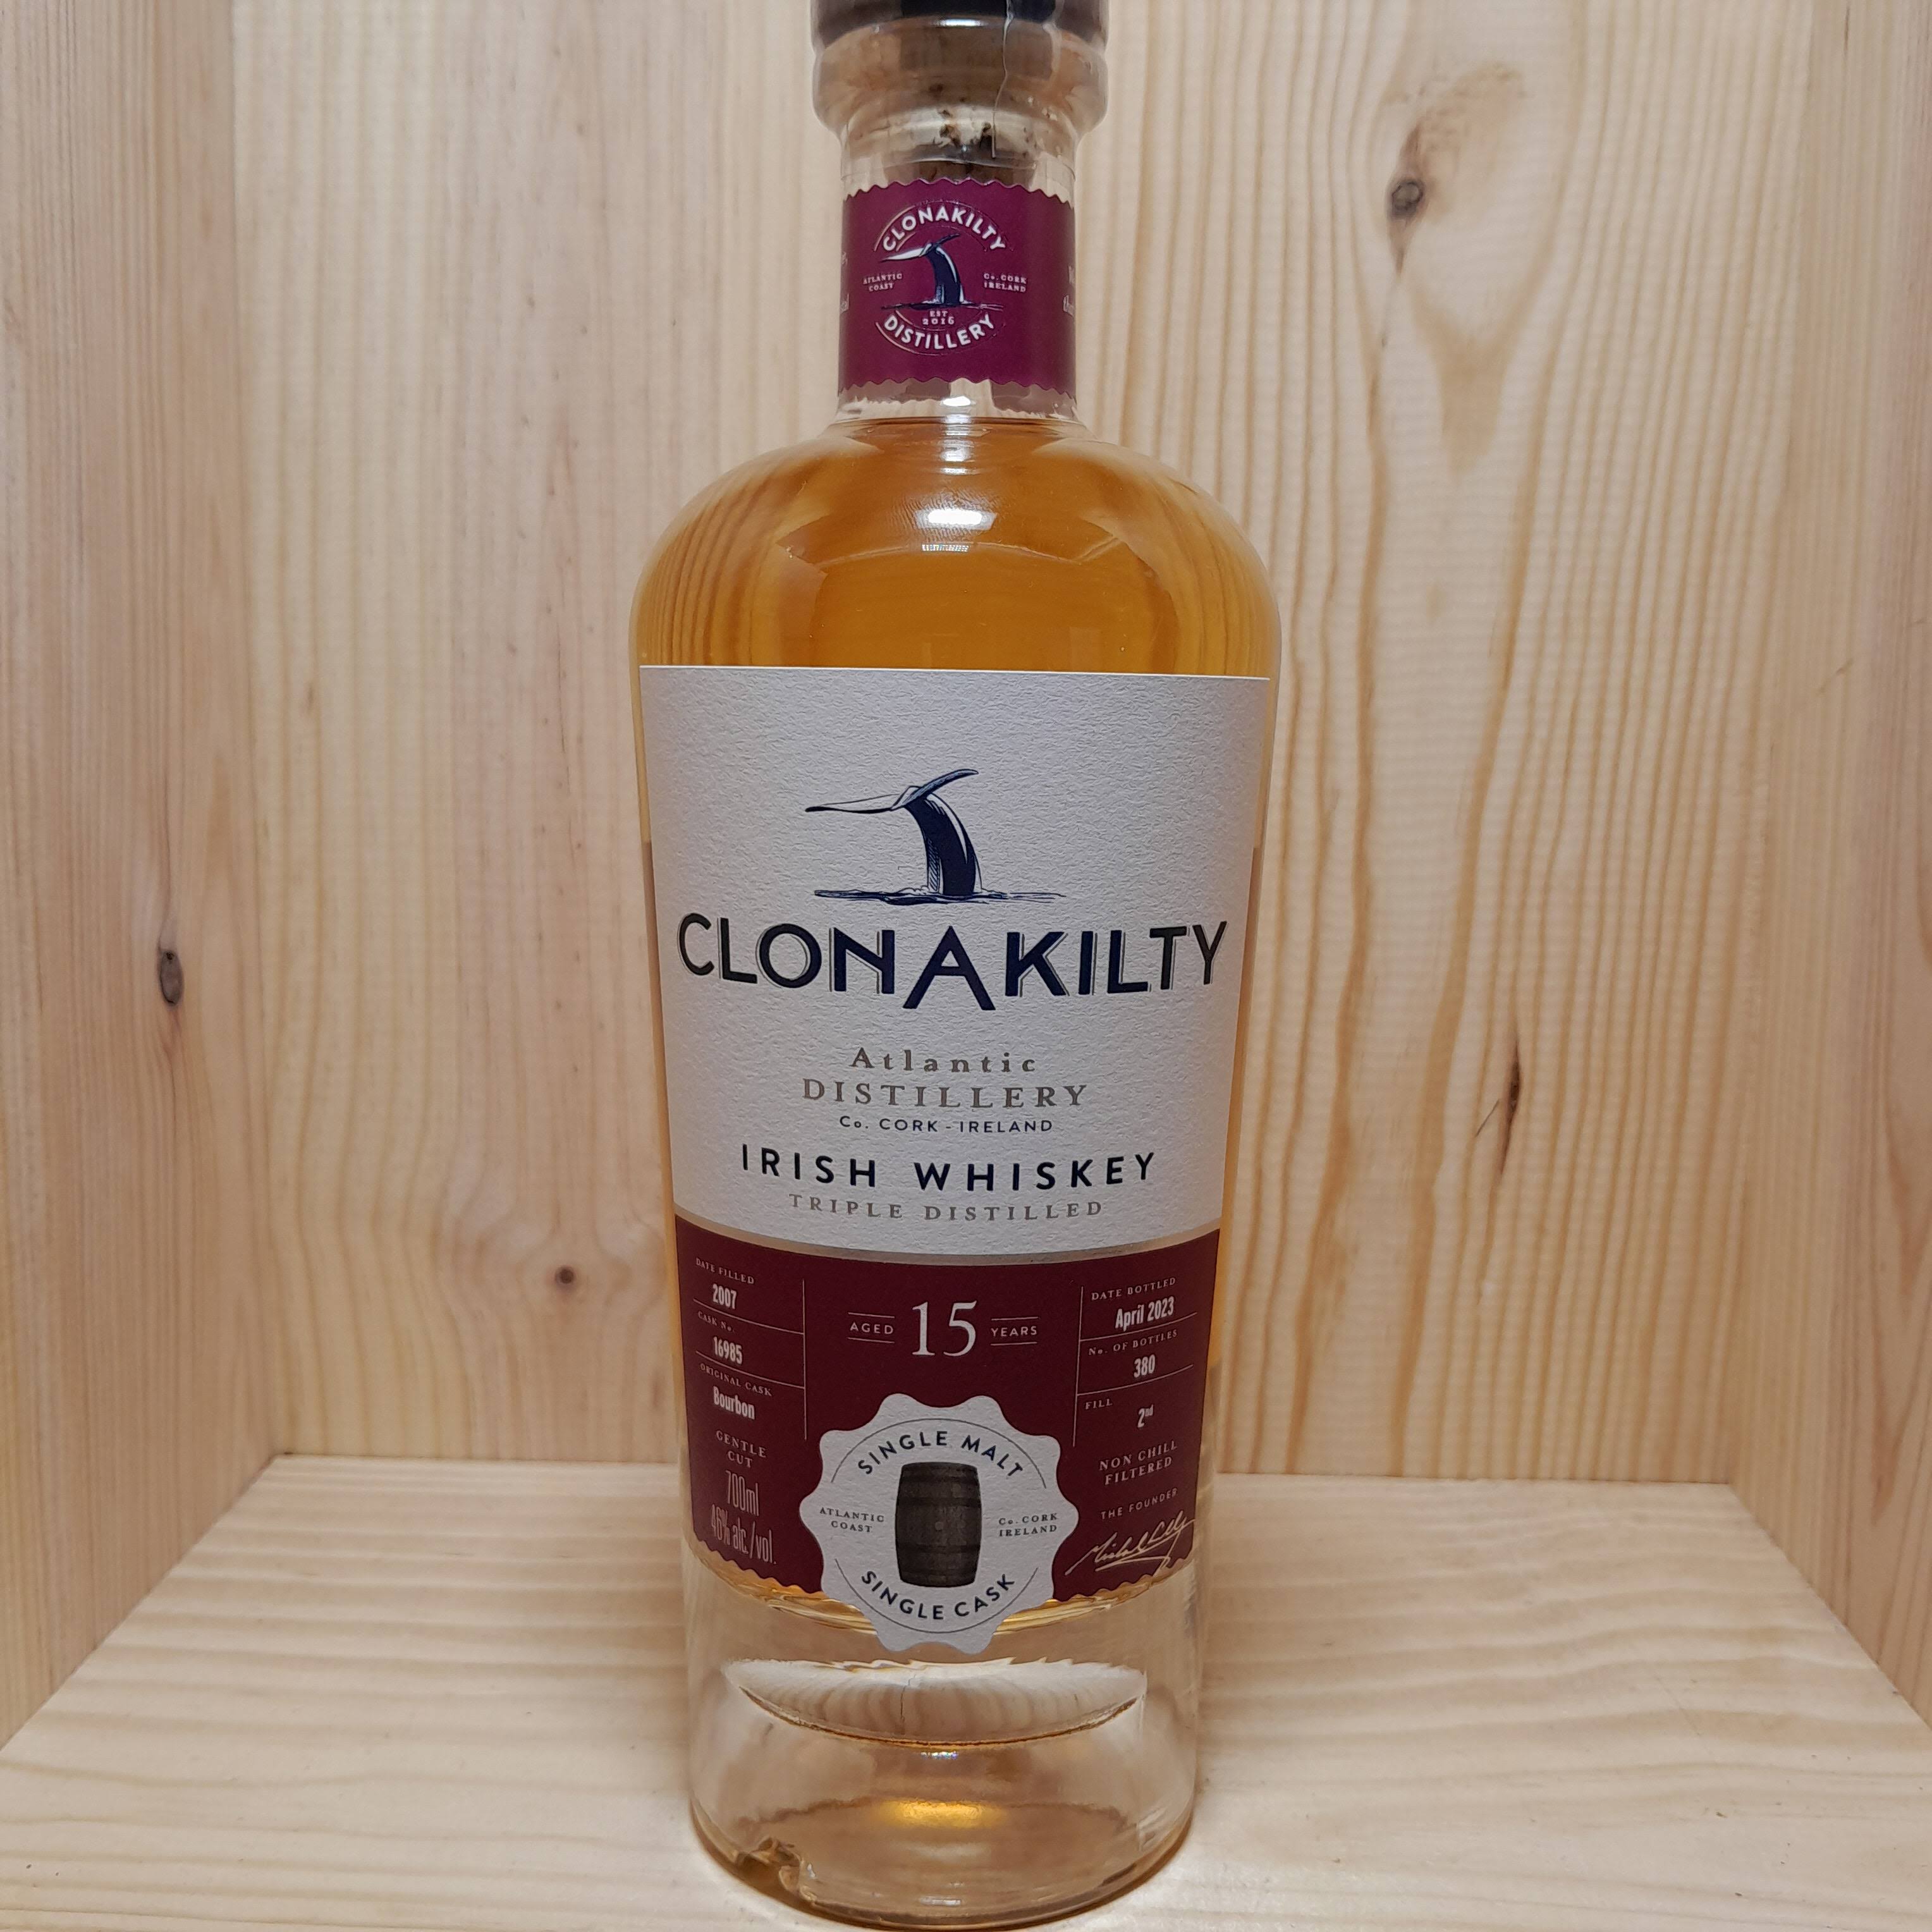 Clonakilty 15 Year Old Single Malt Irish Whiskey